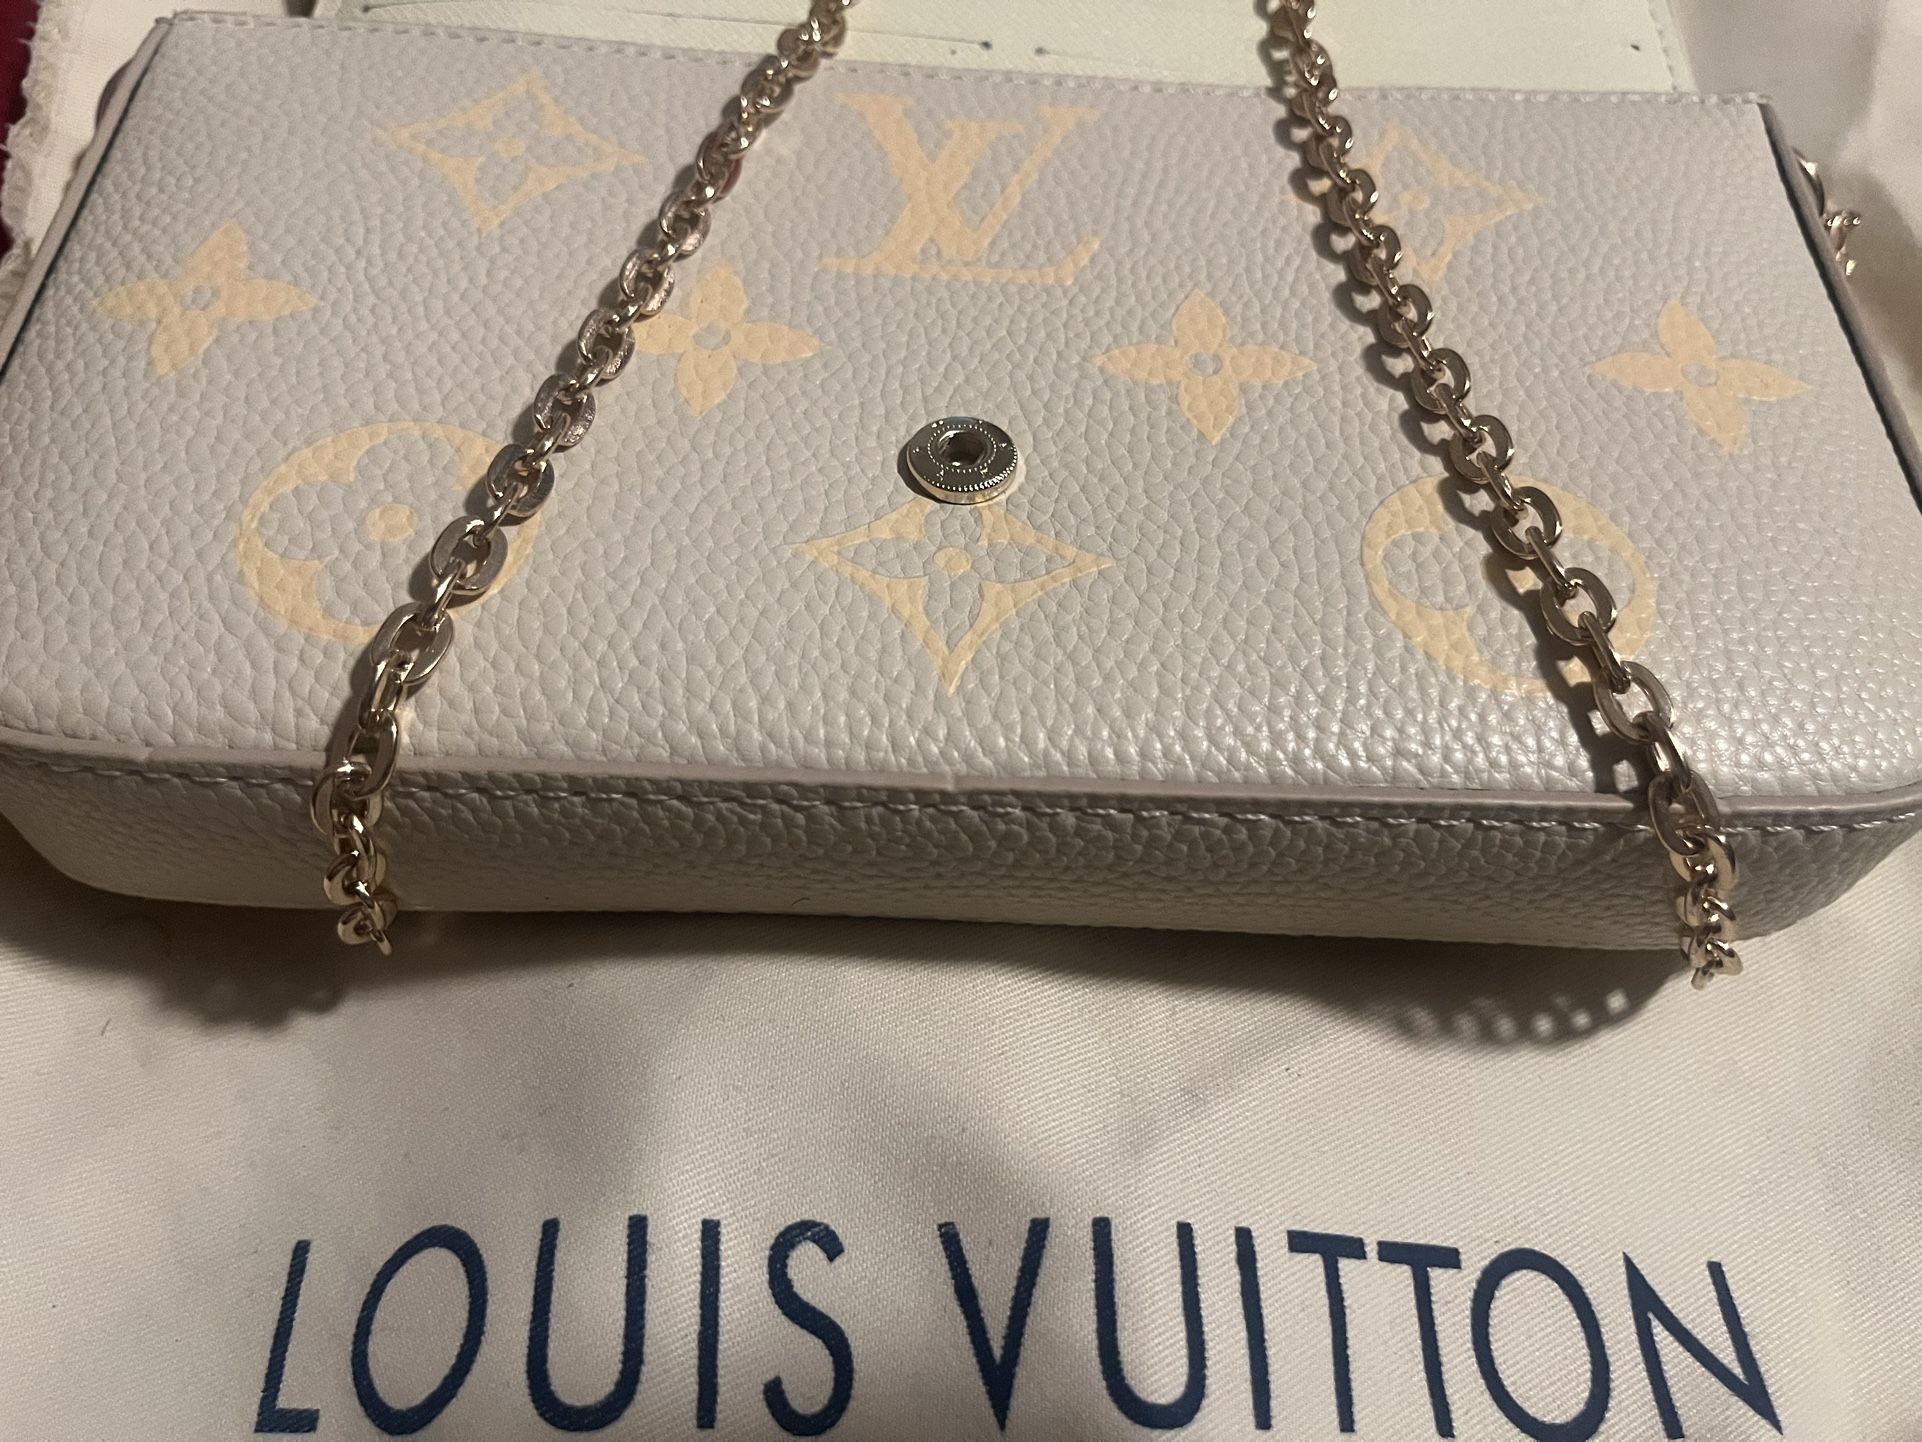 Louis Vuitton Keychain Wallet/Pouch for Sale in Miramar, FL - OfferUp